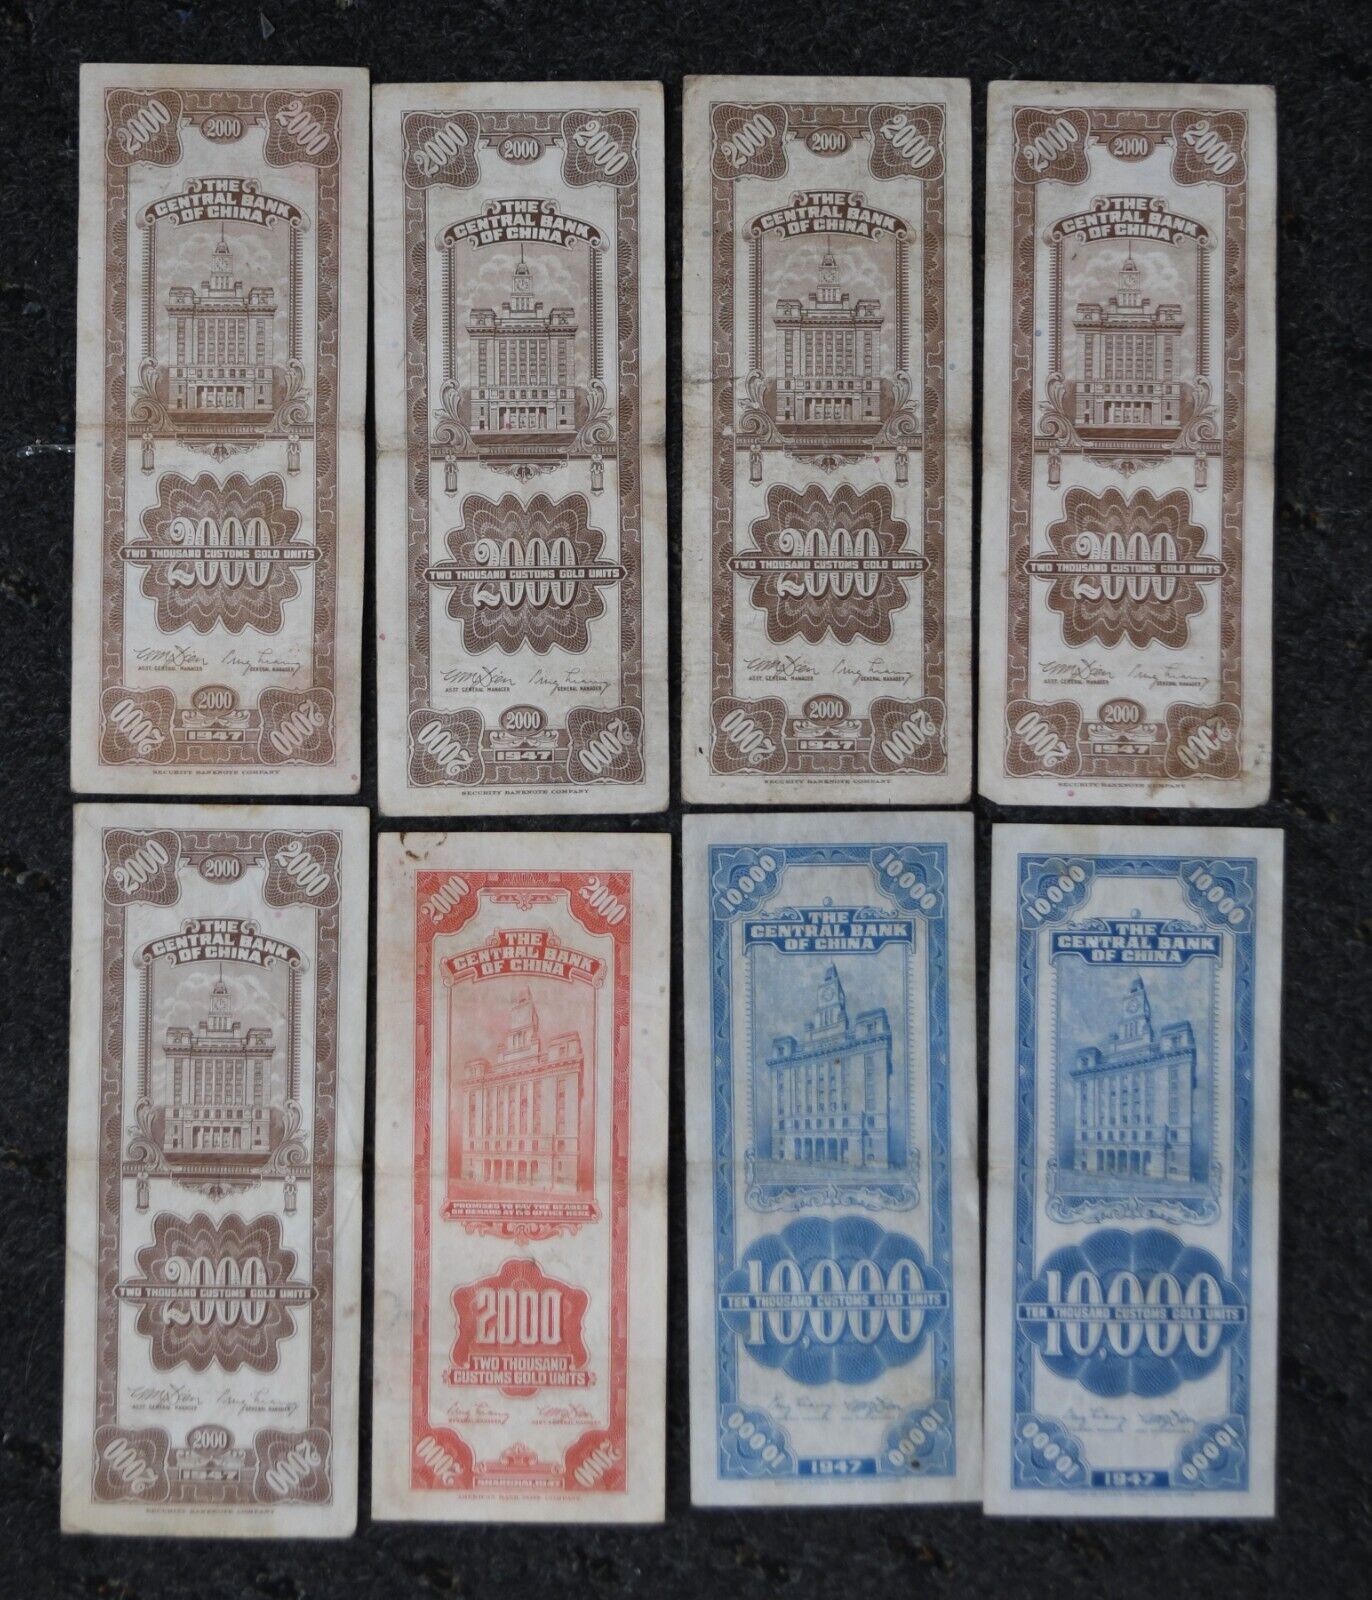 8 1947 Central China Bank Gold Unit Notes 2,000 & 10,000 Yuan